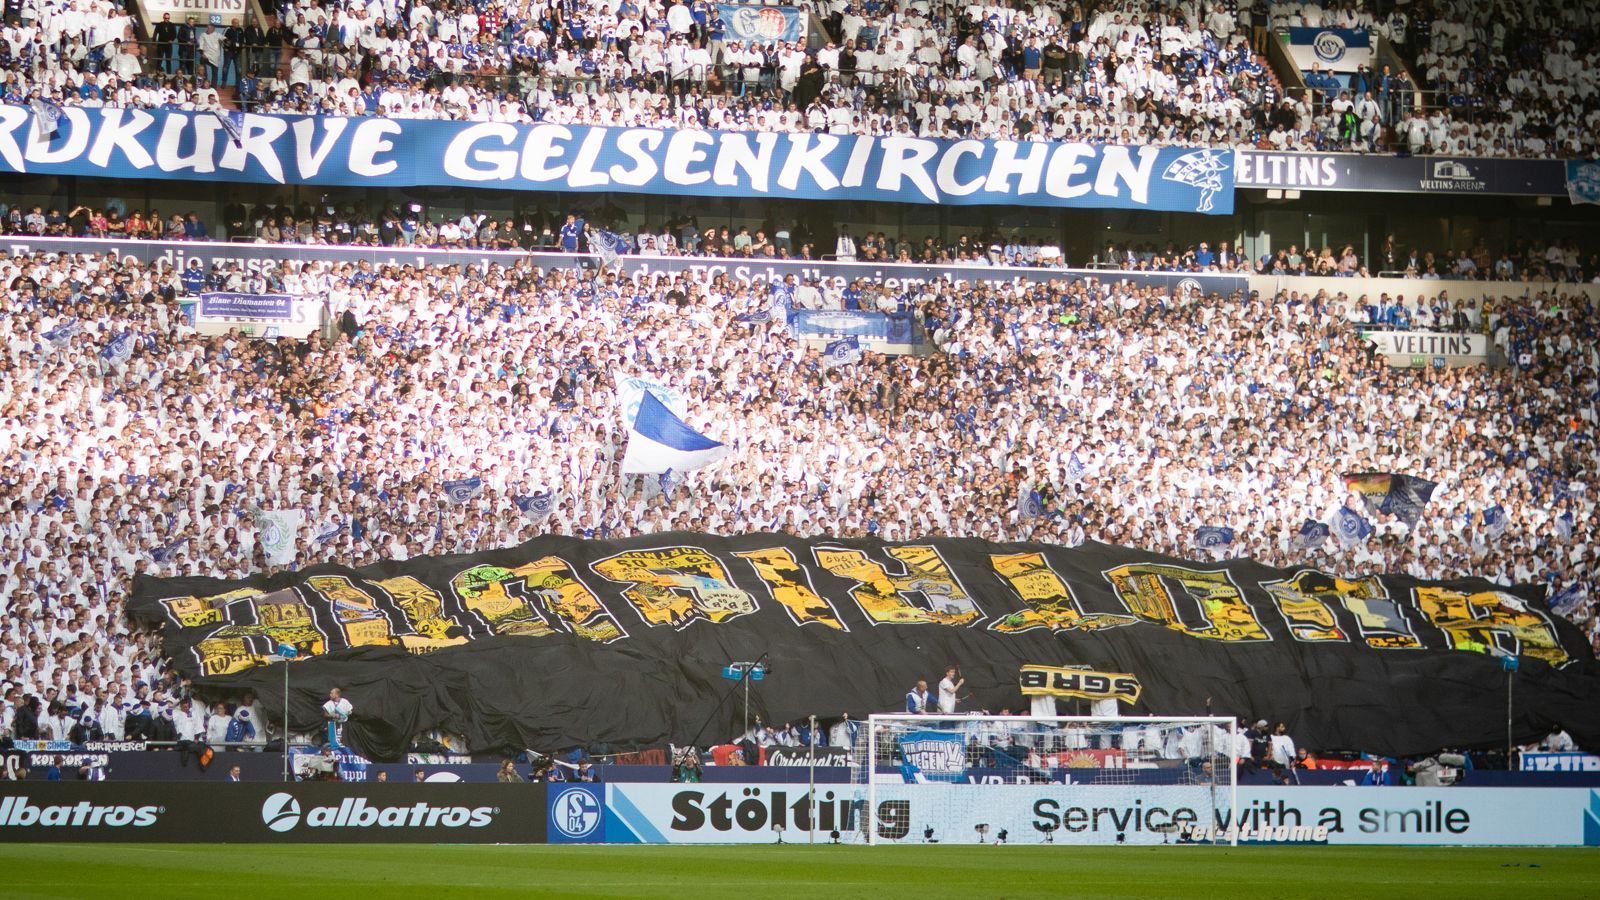 
                <strong>Bundesliga: Impressionen vom Revierderby 2019/20</strong><br>
                Auf der anderen Seite hatte auch die S04-Nordkurve ihren großen Auftritt, präsentierte ein offenbar von BVB-Fans ergattertes Banner.
              